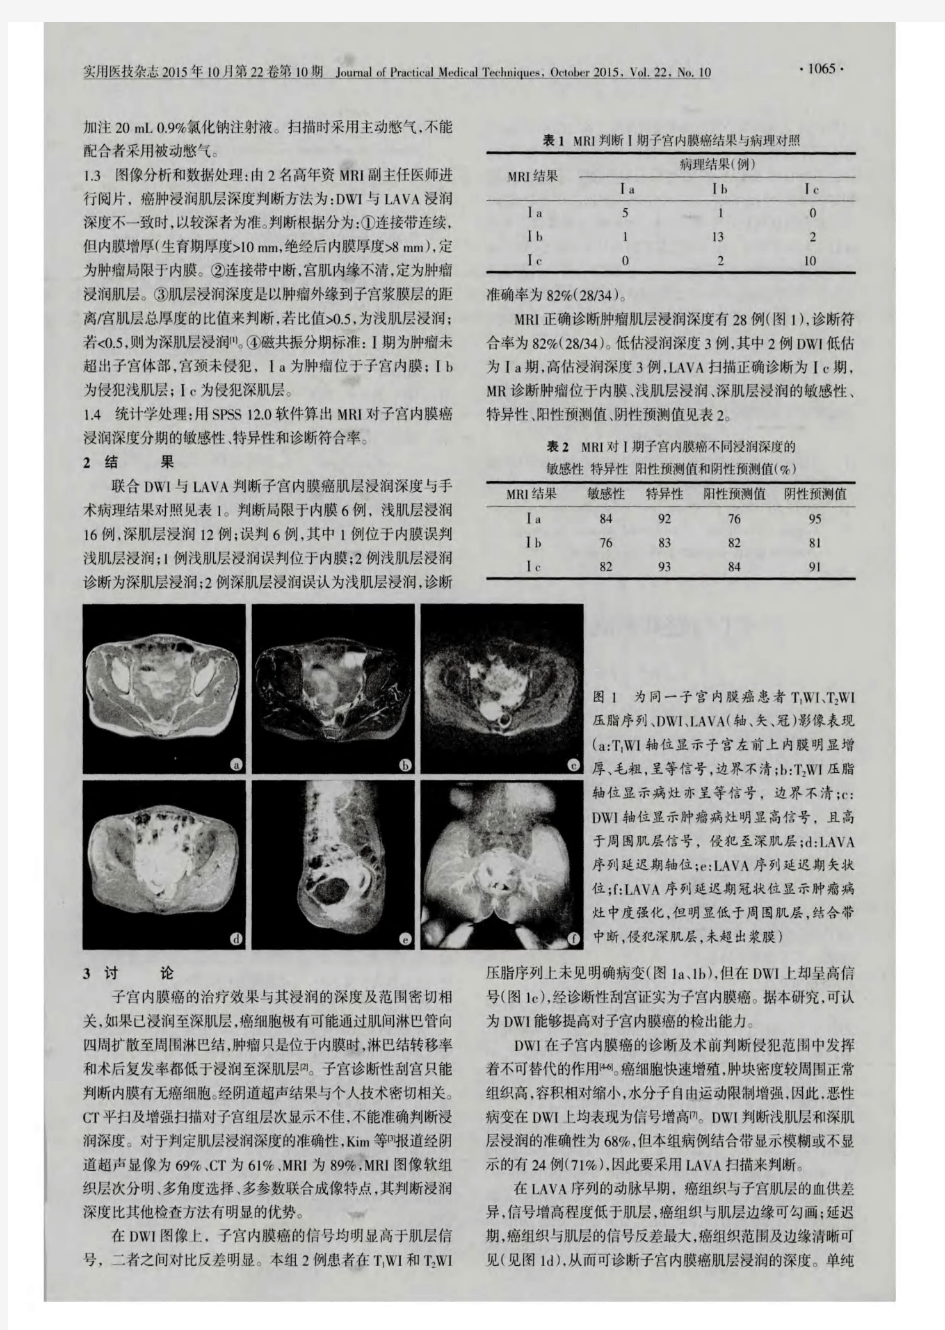 弥散加权成像联合肝脏快速三维容积动态增强在子宫内膜癌肌层浸润诊断中的价值(PDF X页)